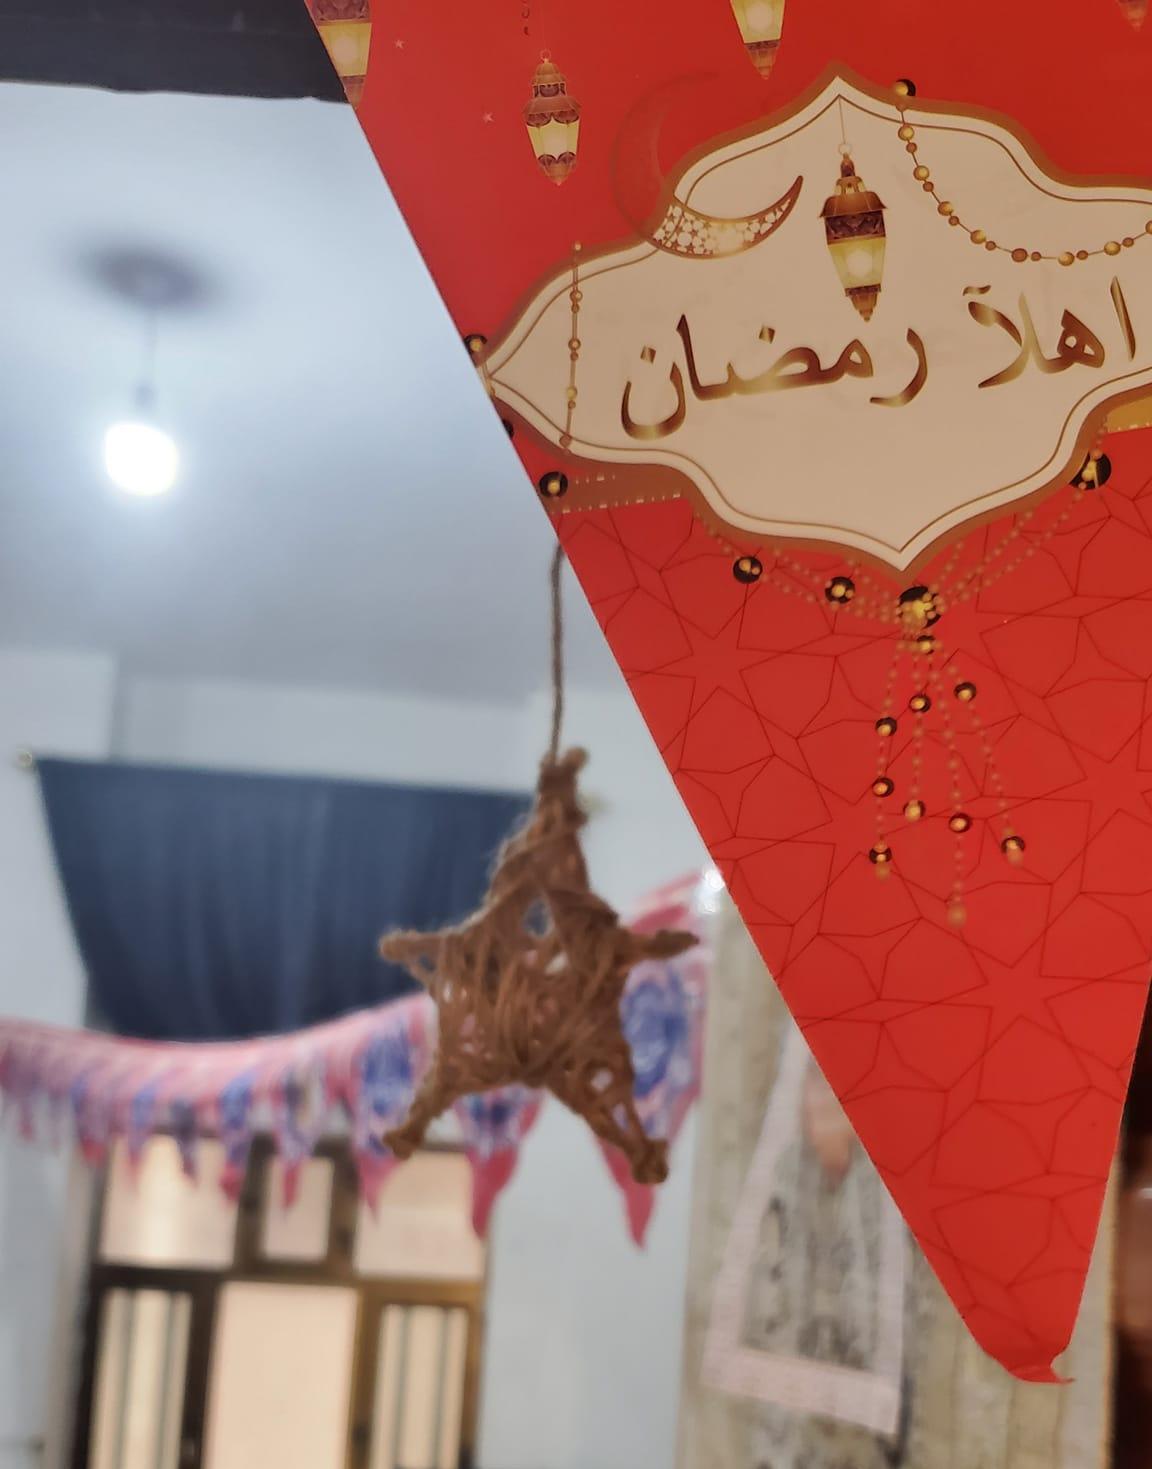 إحتفال طالبات مركز اللغات الدولي/ فرع الطالبات و معلماتهن بقدوم شهر رمضان المبارك